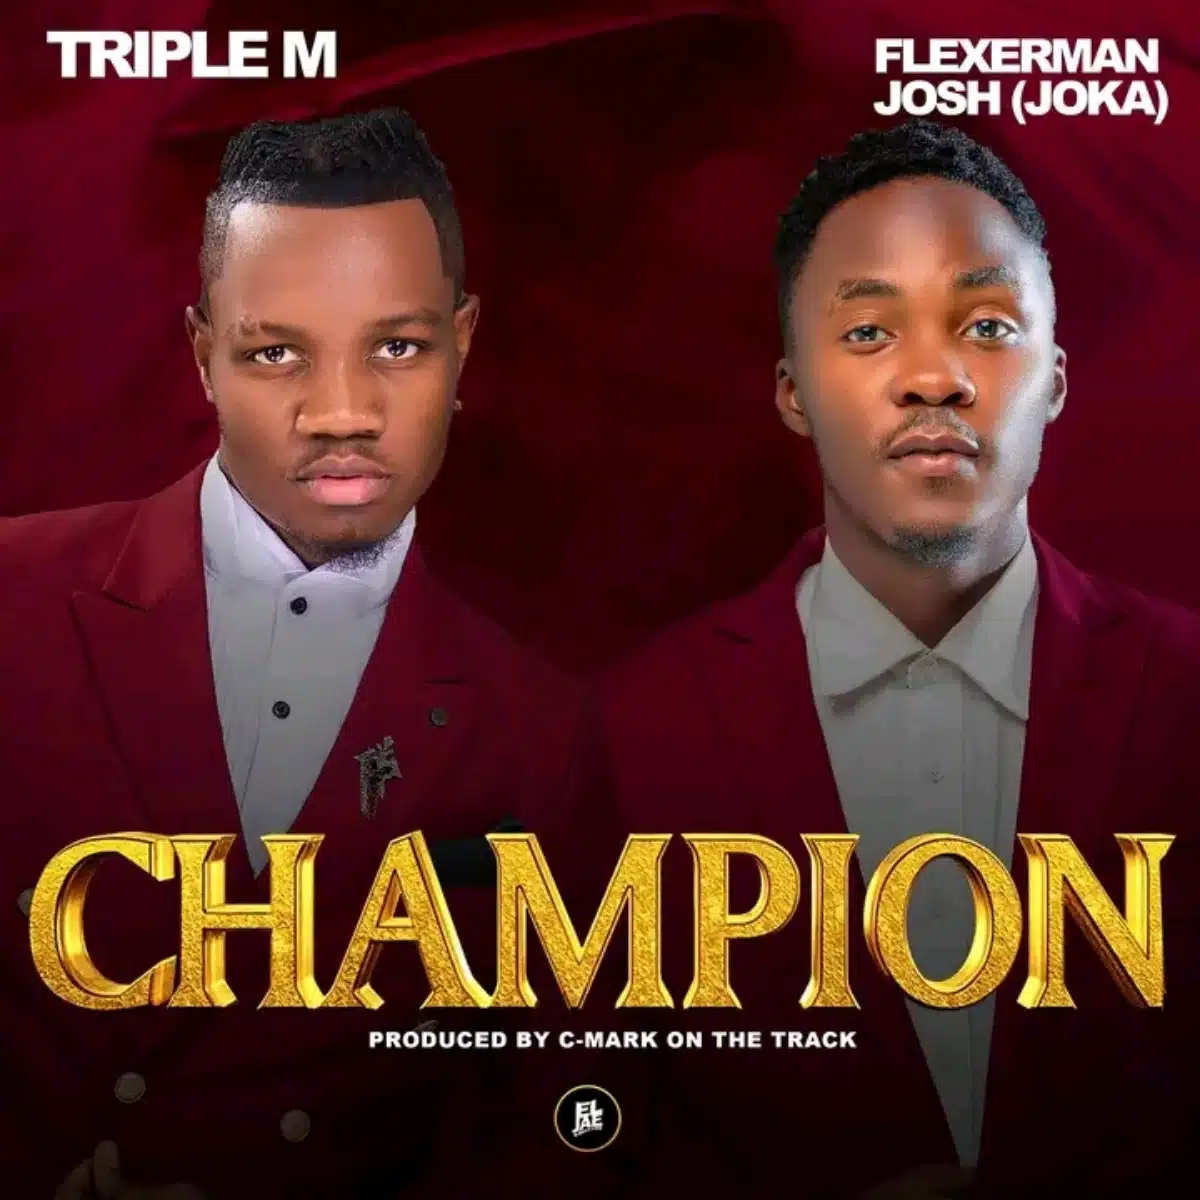 DOWNLOAD: Triple M Ft. Flexerman Josh – “Champion” Mp3